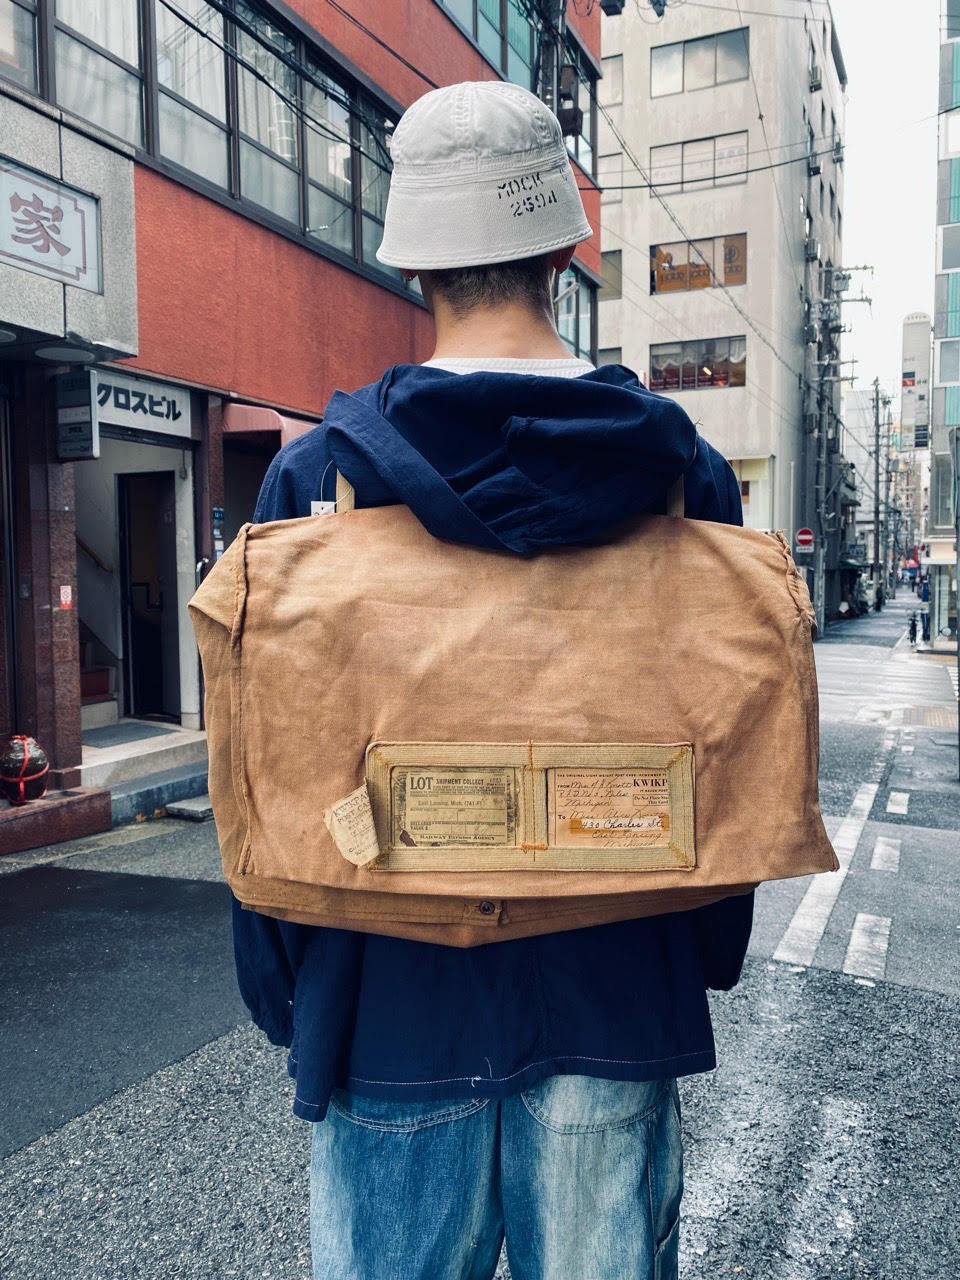 マグネッツ神戸店 5/17(水)Vintage入荷! #7 Vintage Bag Item!!!_c0078587_16273122.jpg